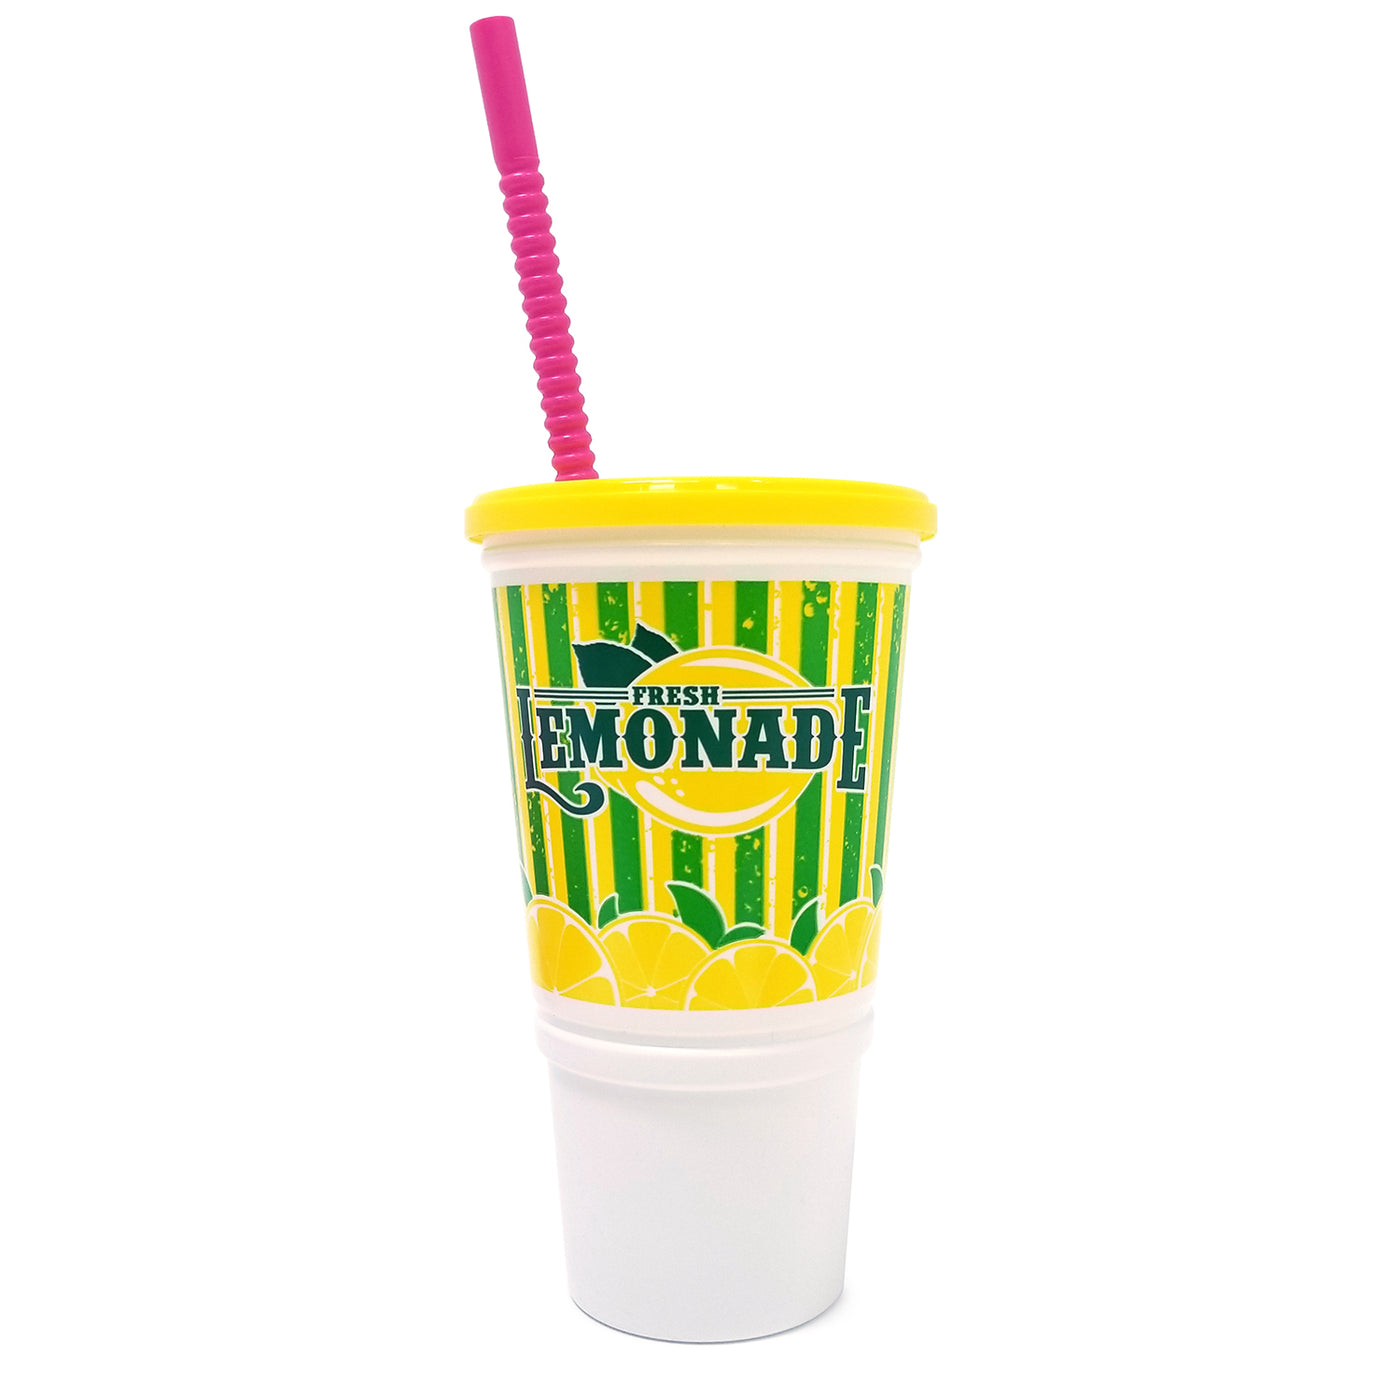 Lemonade Cups & Lids  32 oz. Plastic Souvenir Cup with lid and